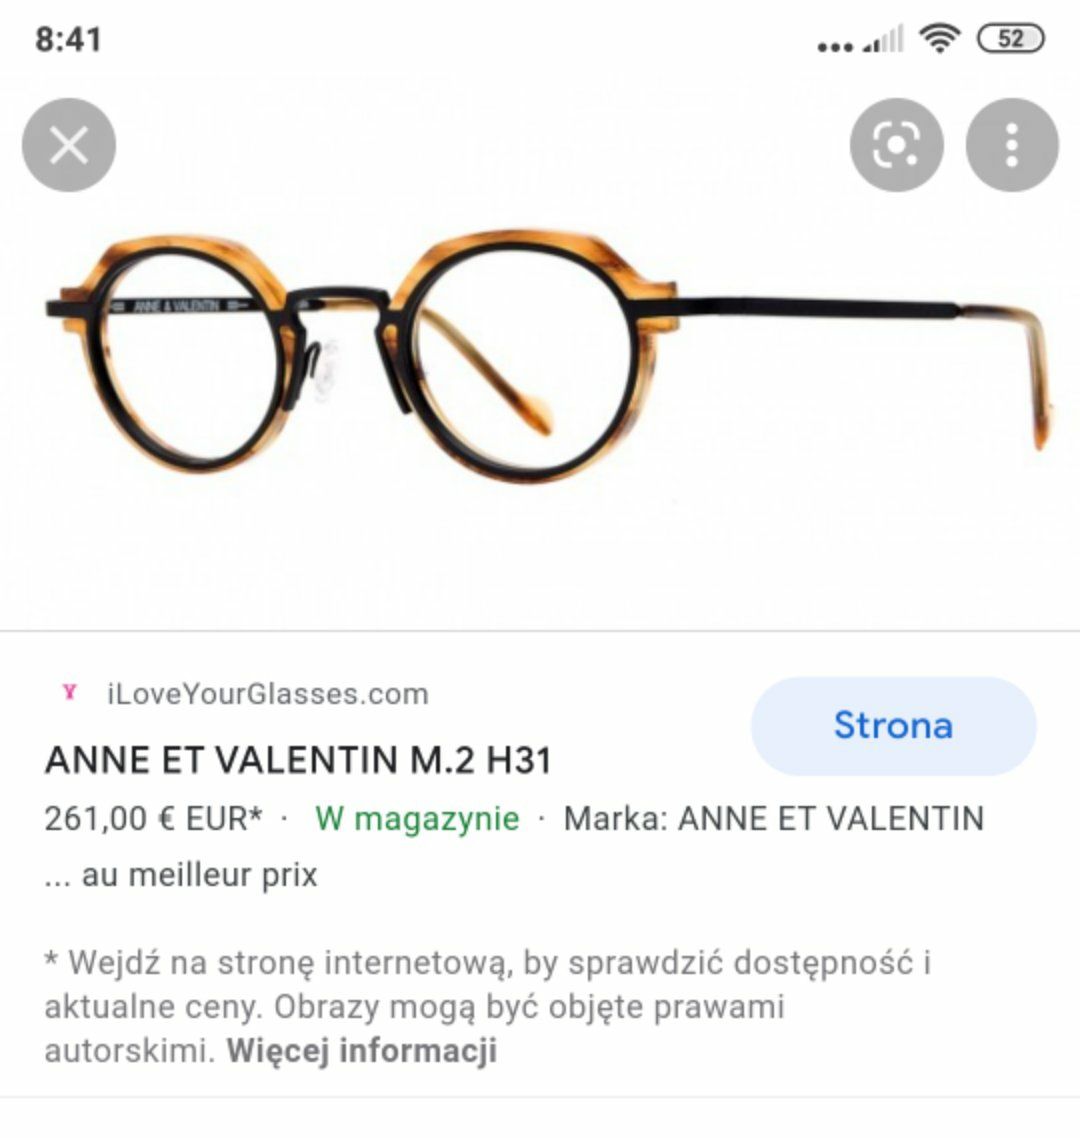 Okulary zerówki vintage Anne et valentin m2